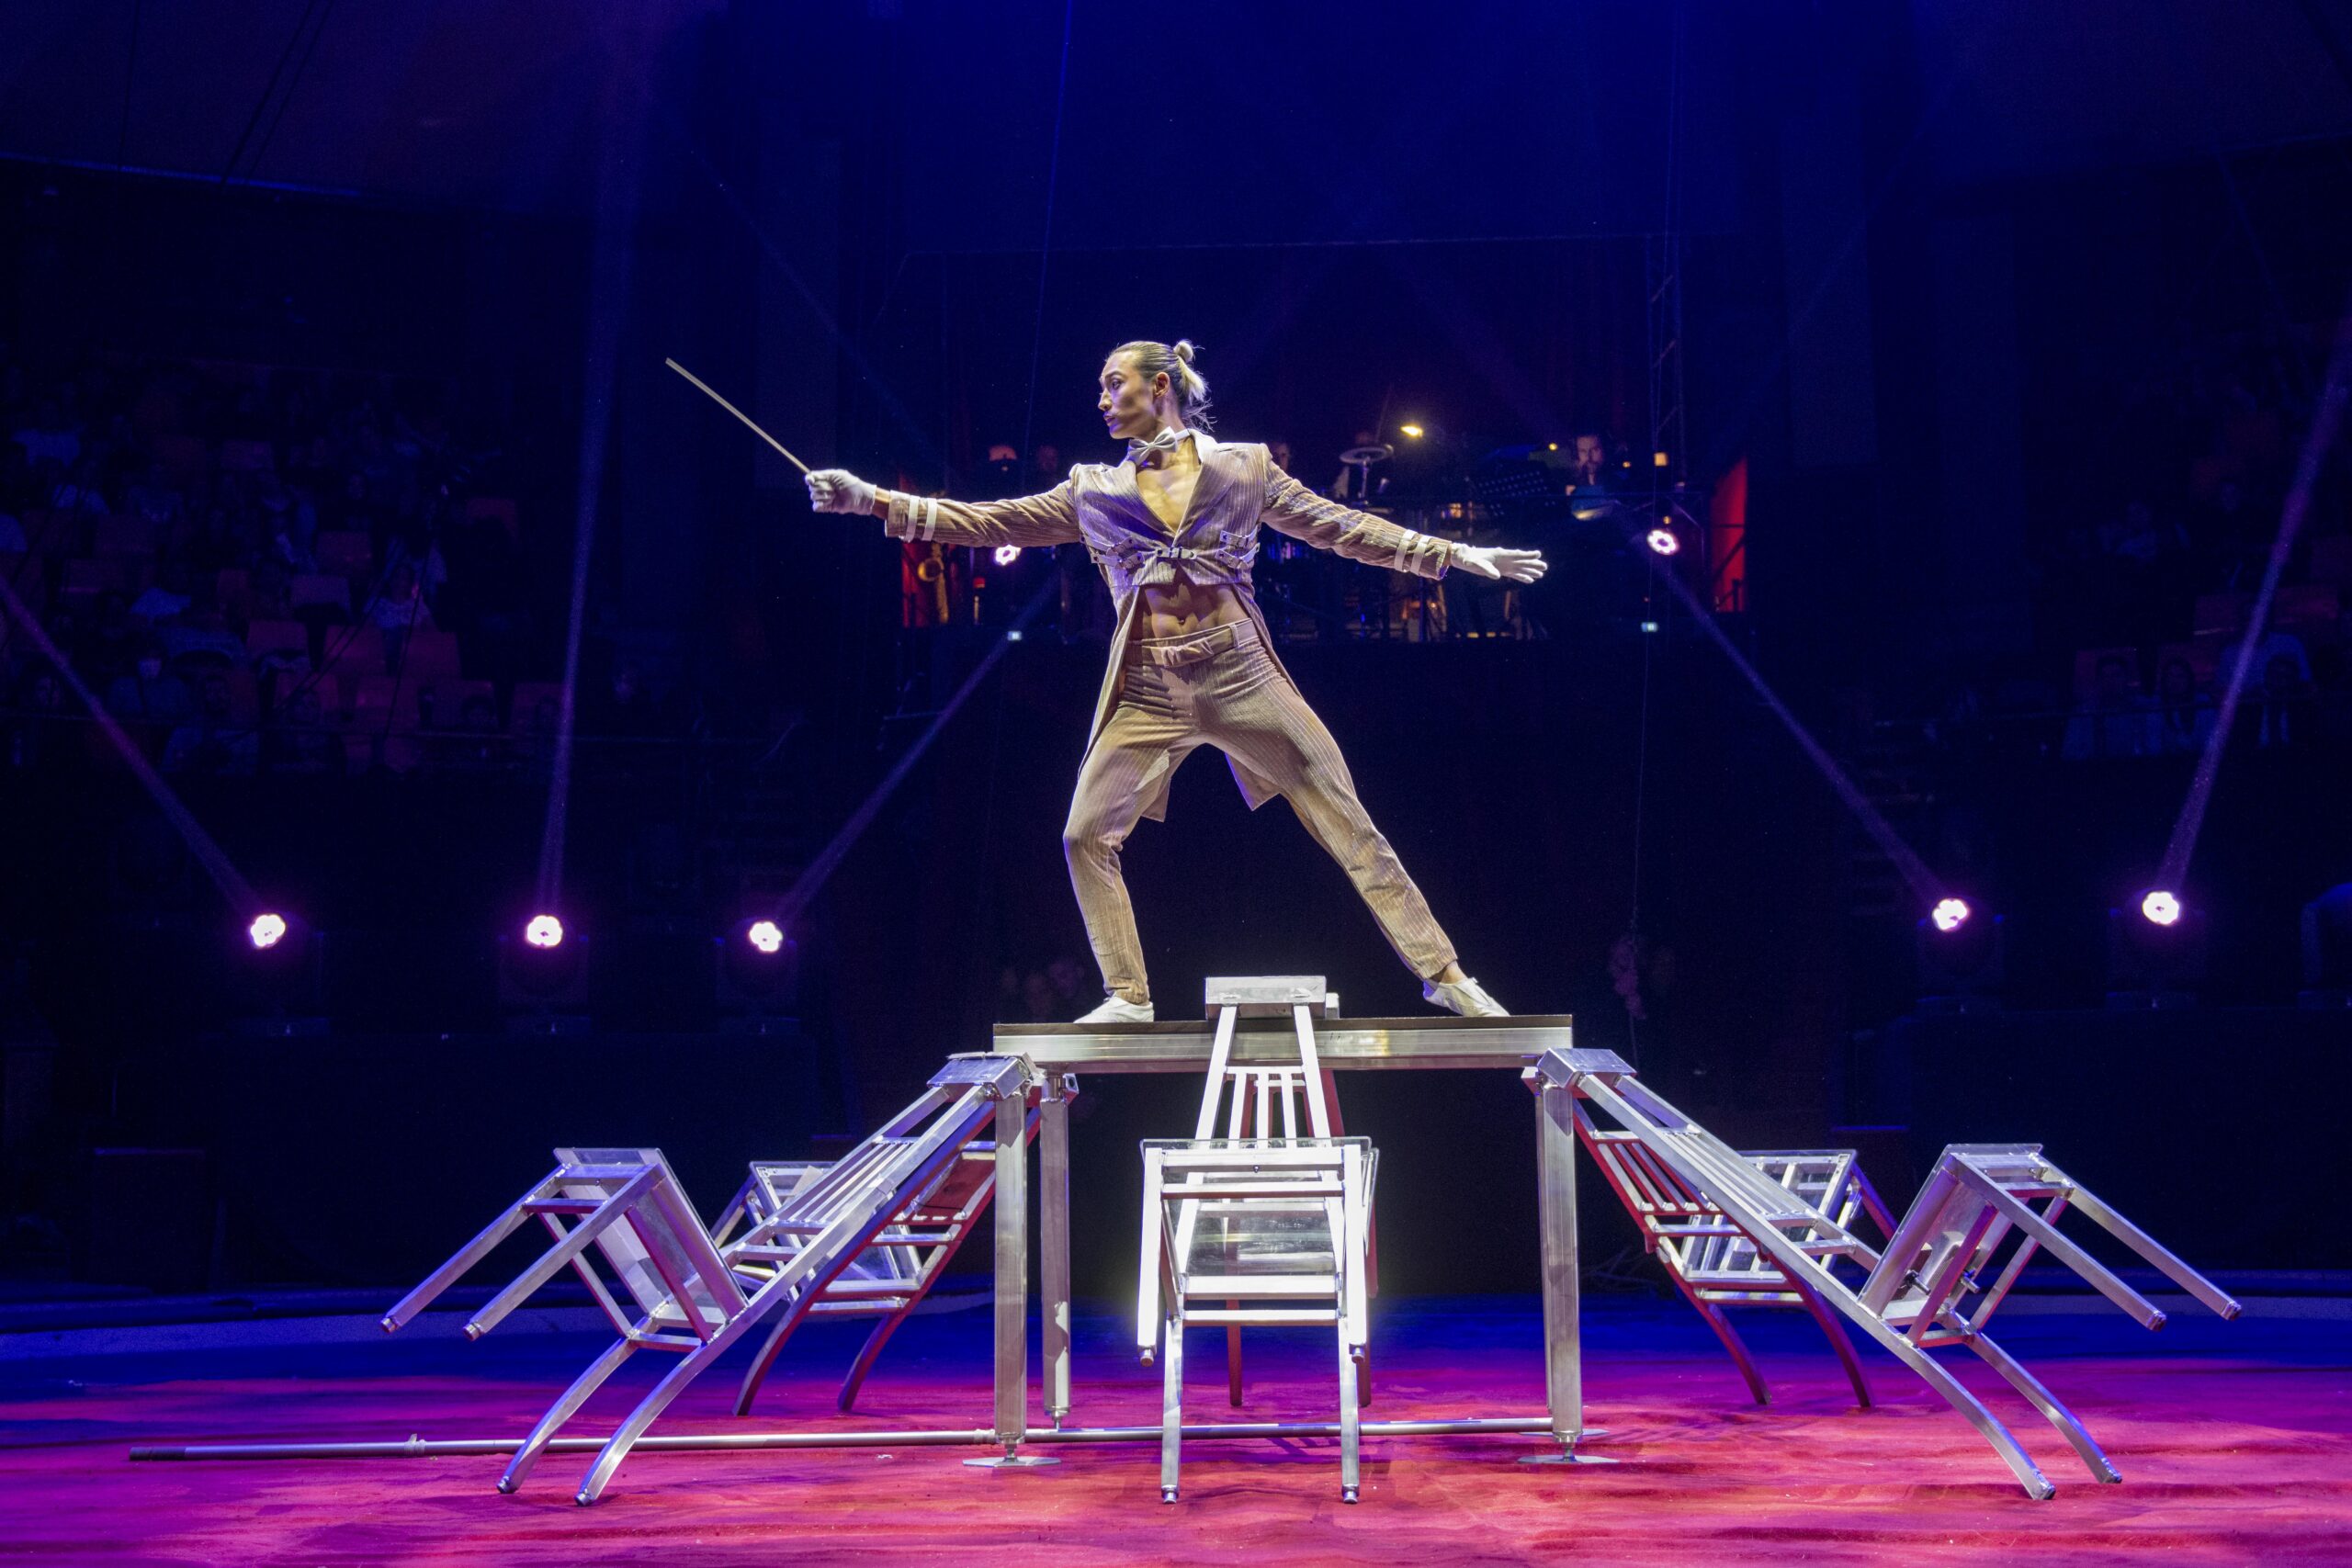 Lkhagva Ochir hét székből álló tornyon mutatja be trükkjeit. A világhírű artistaművész a Cirque du Soleil társulatának is oszlopos tagja volt. 